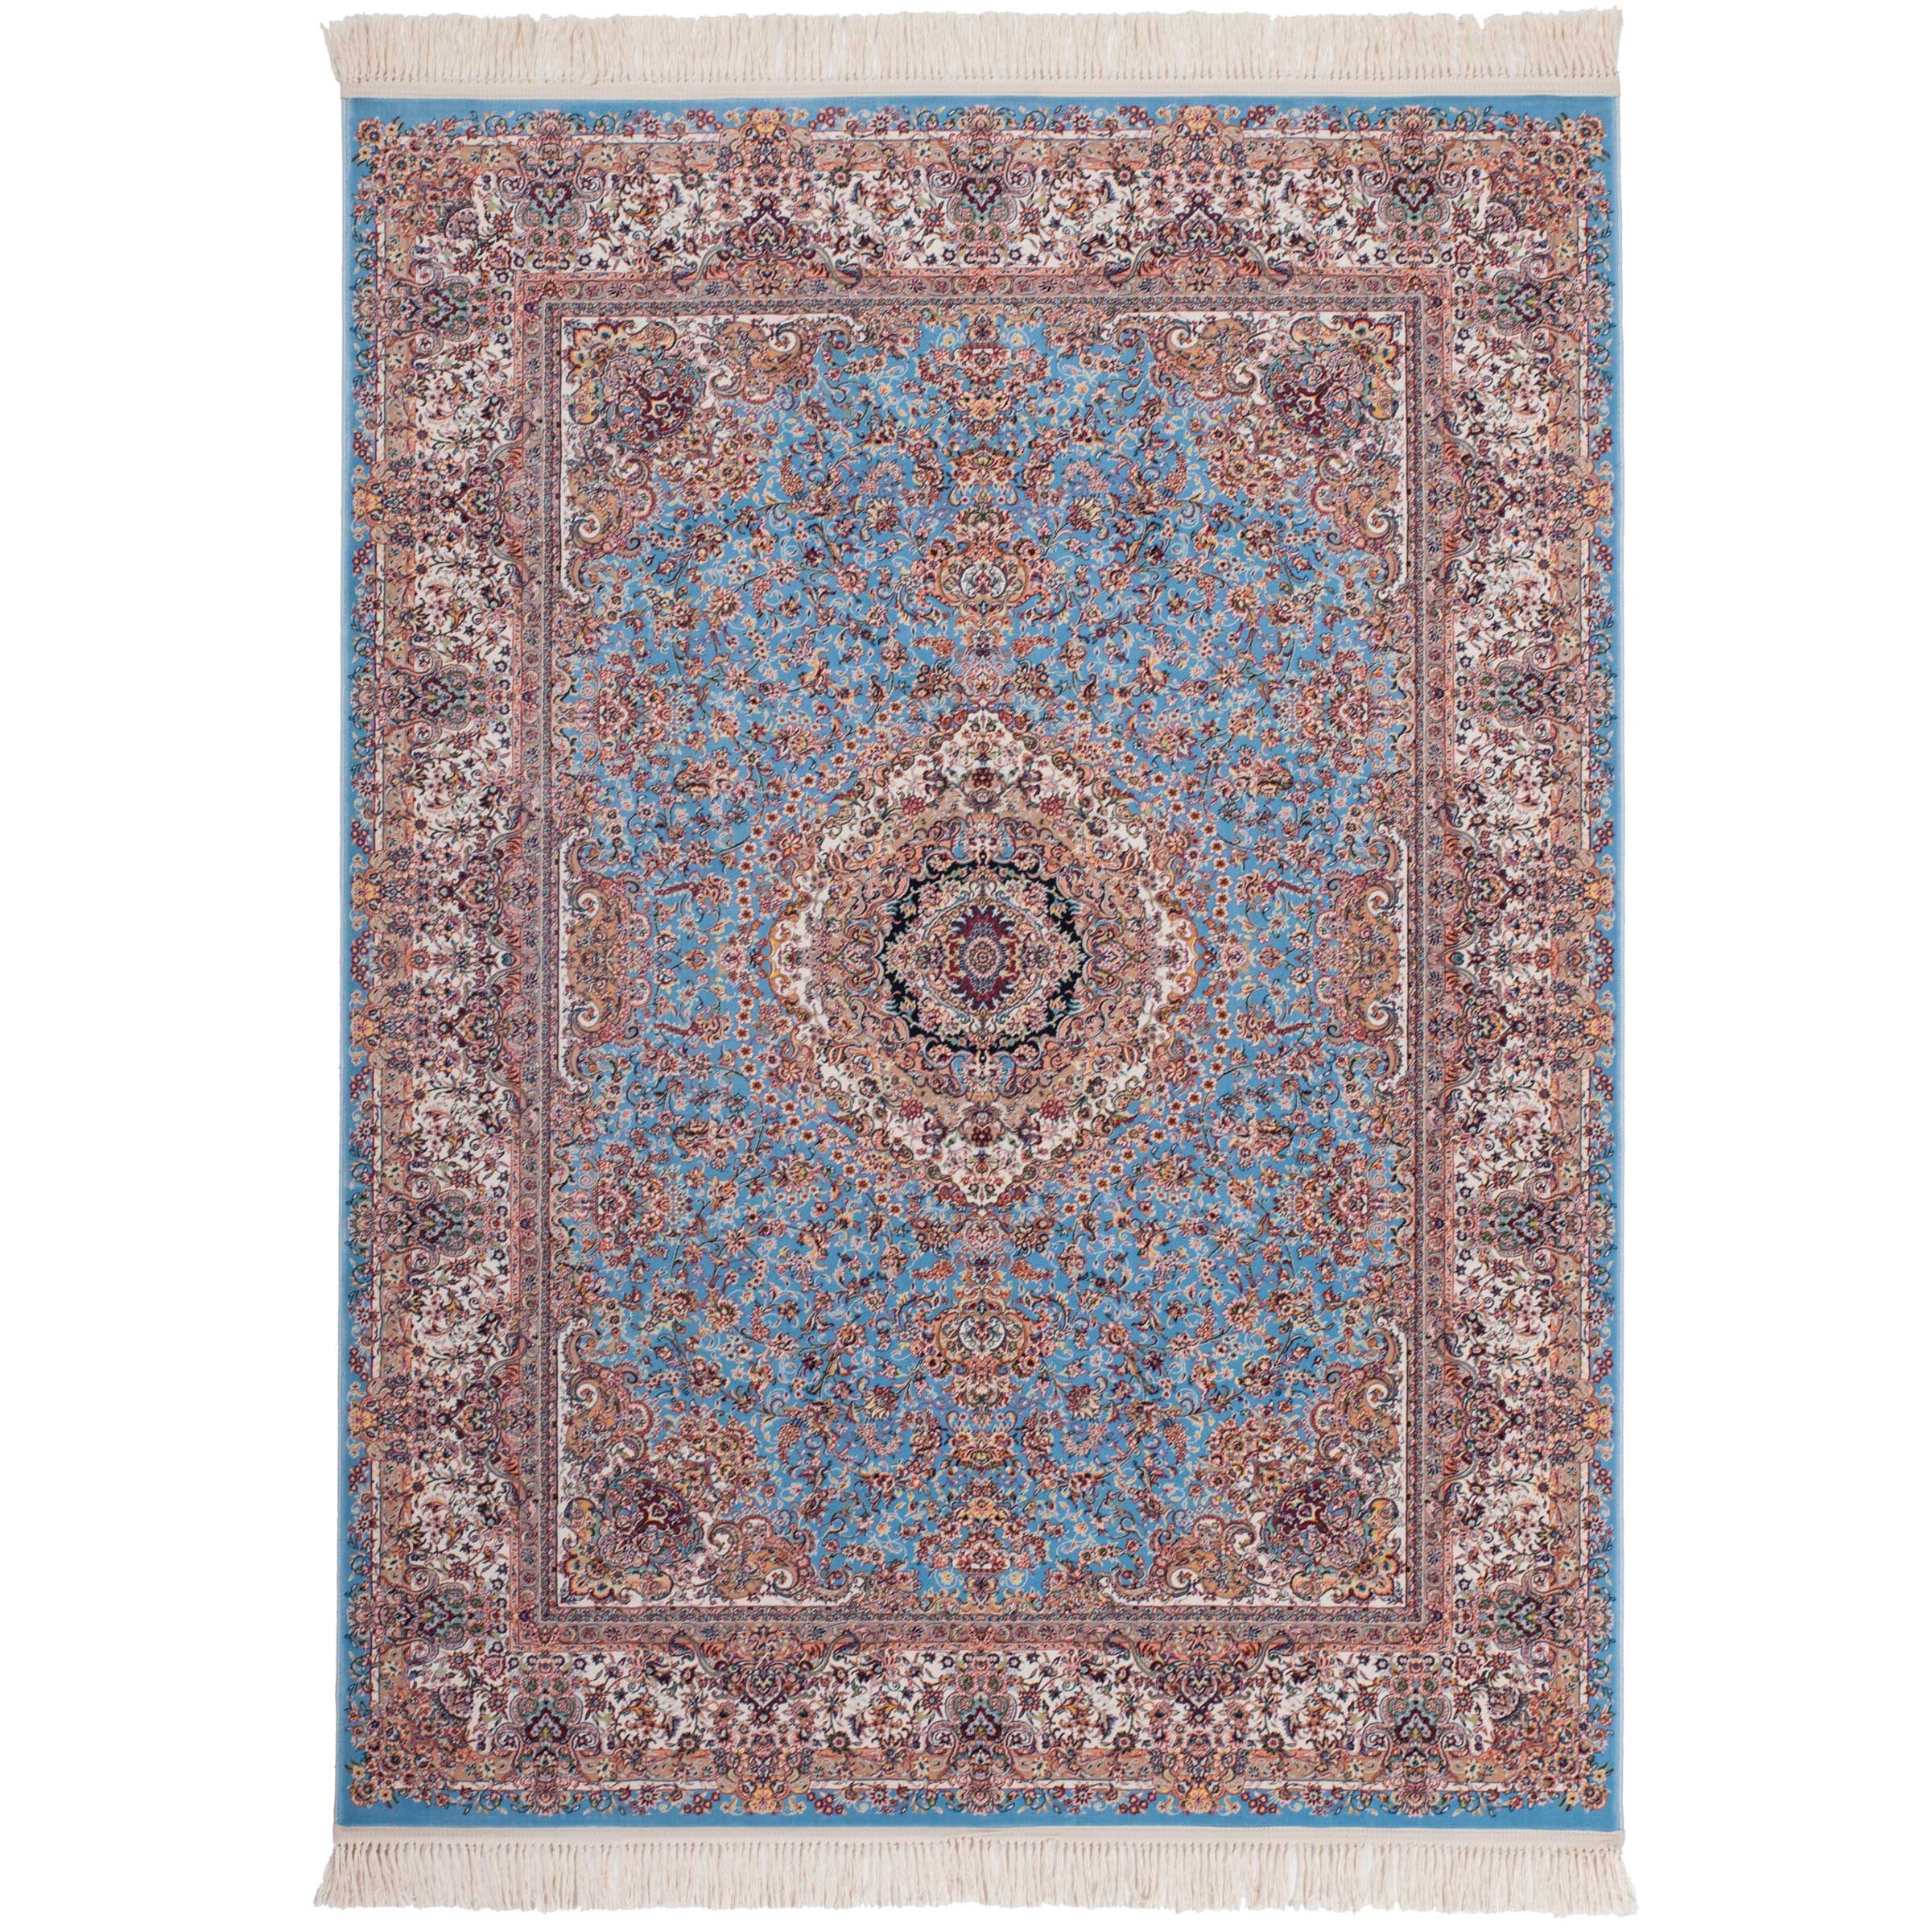 Super goed lof Boek Blauw Perzisch tapijt kopen? | Perzische tapijten | kameraankleden.nl